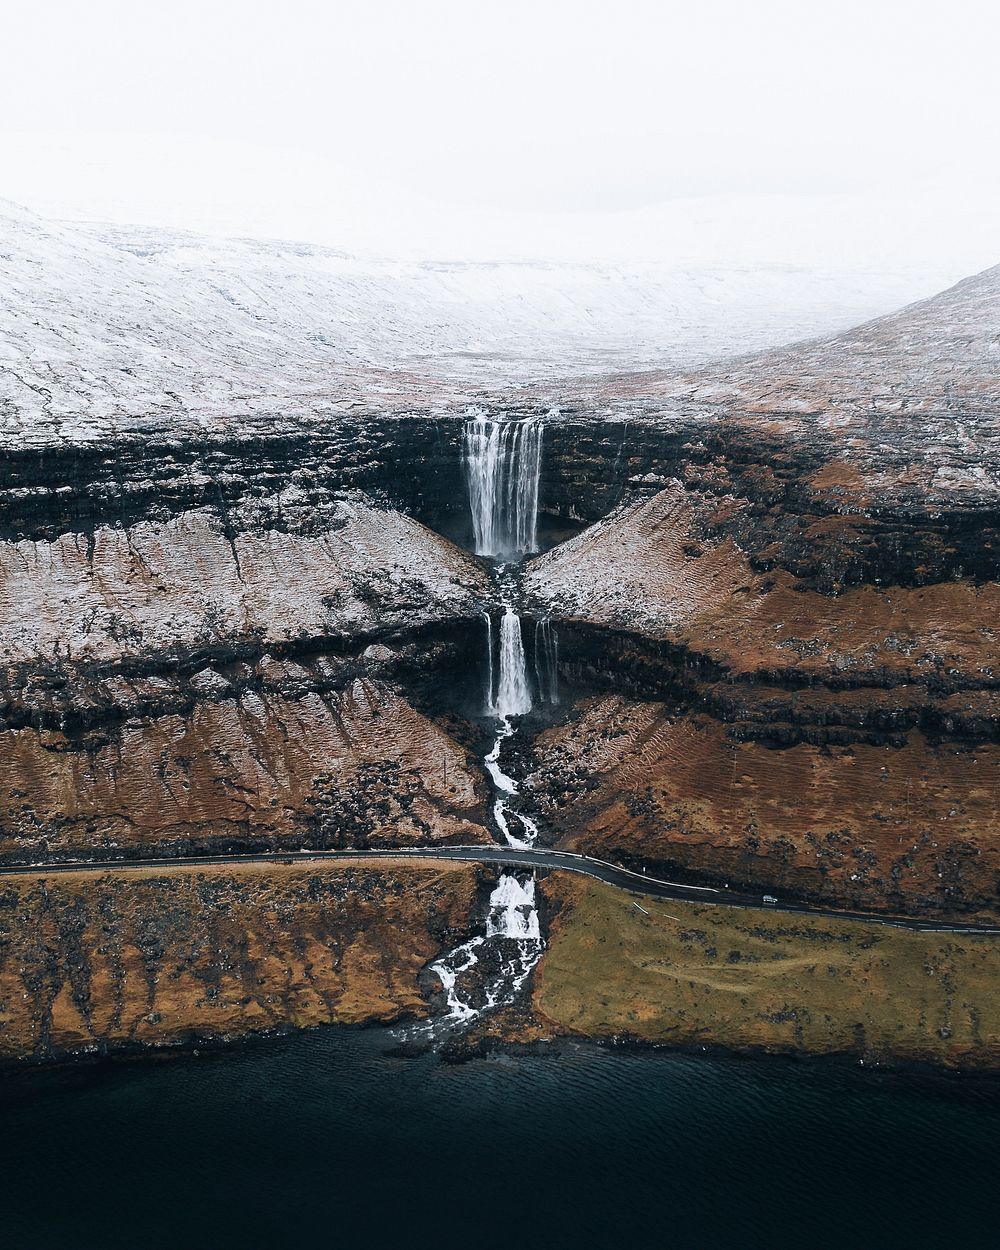 Drone shot of highland waterfall in Faroe Islands